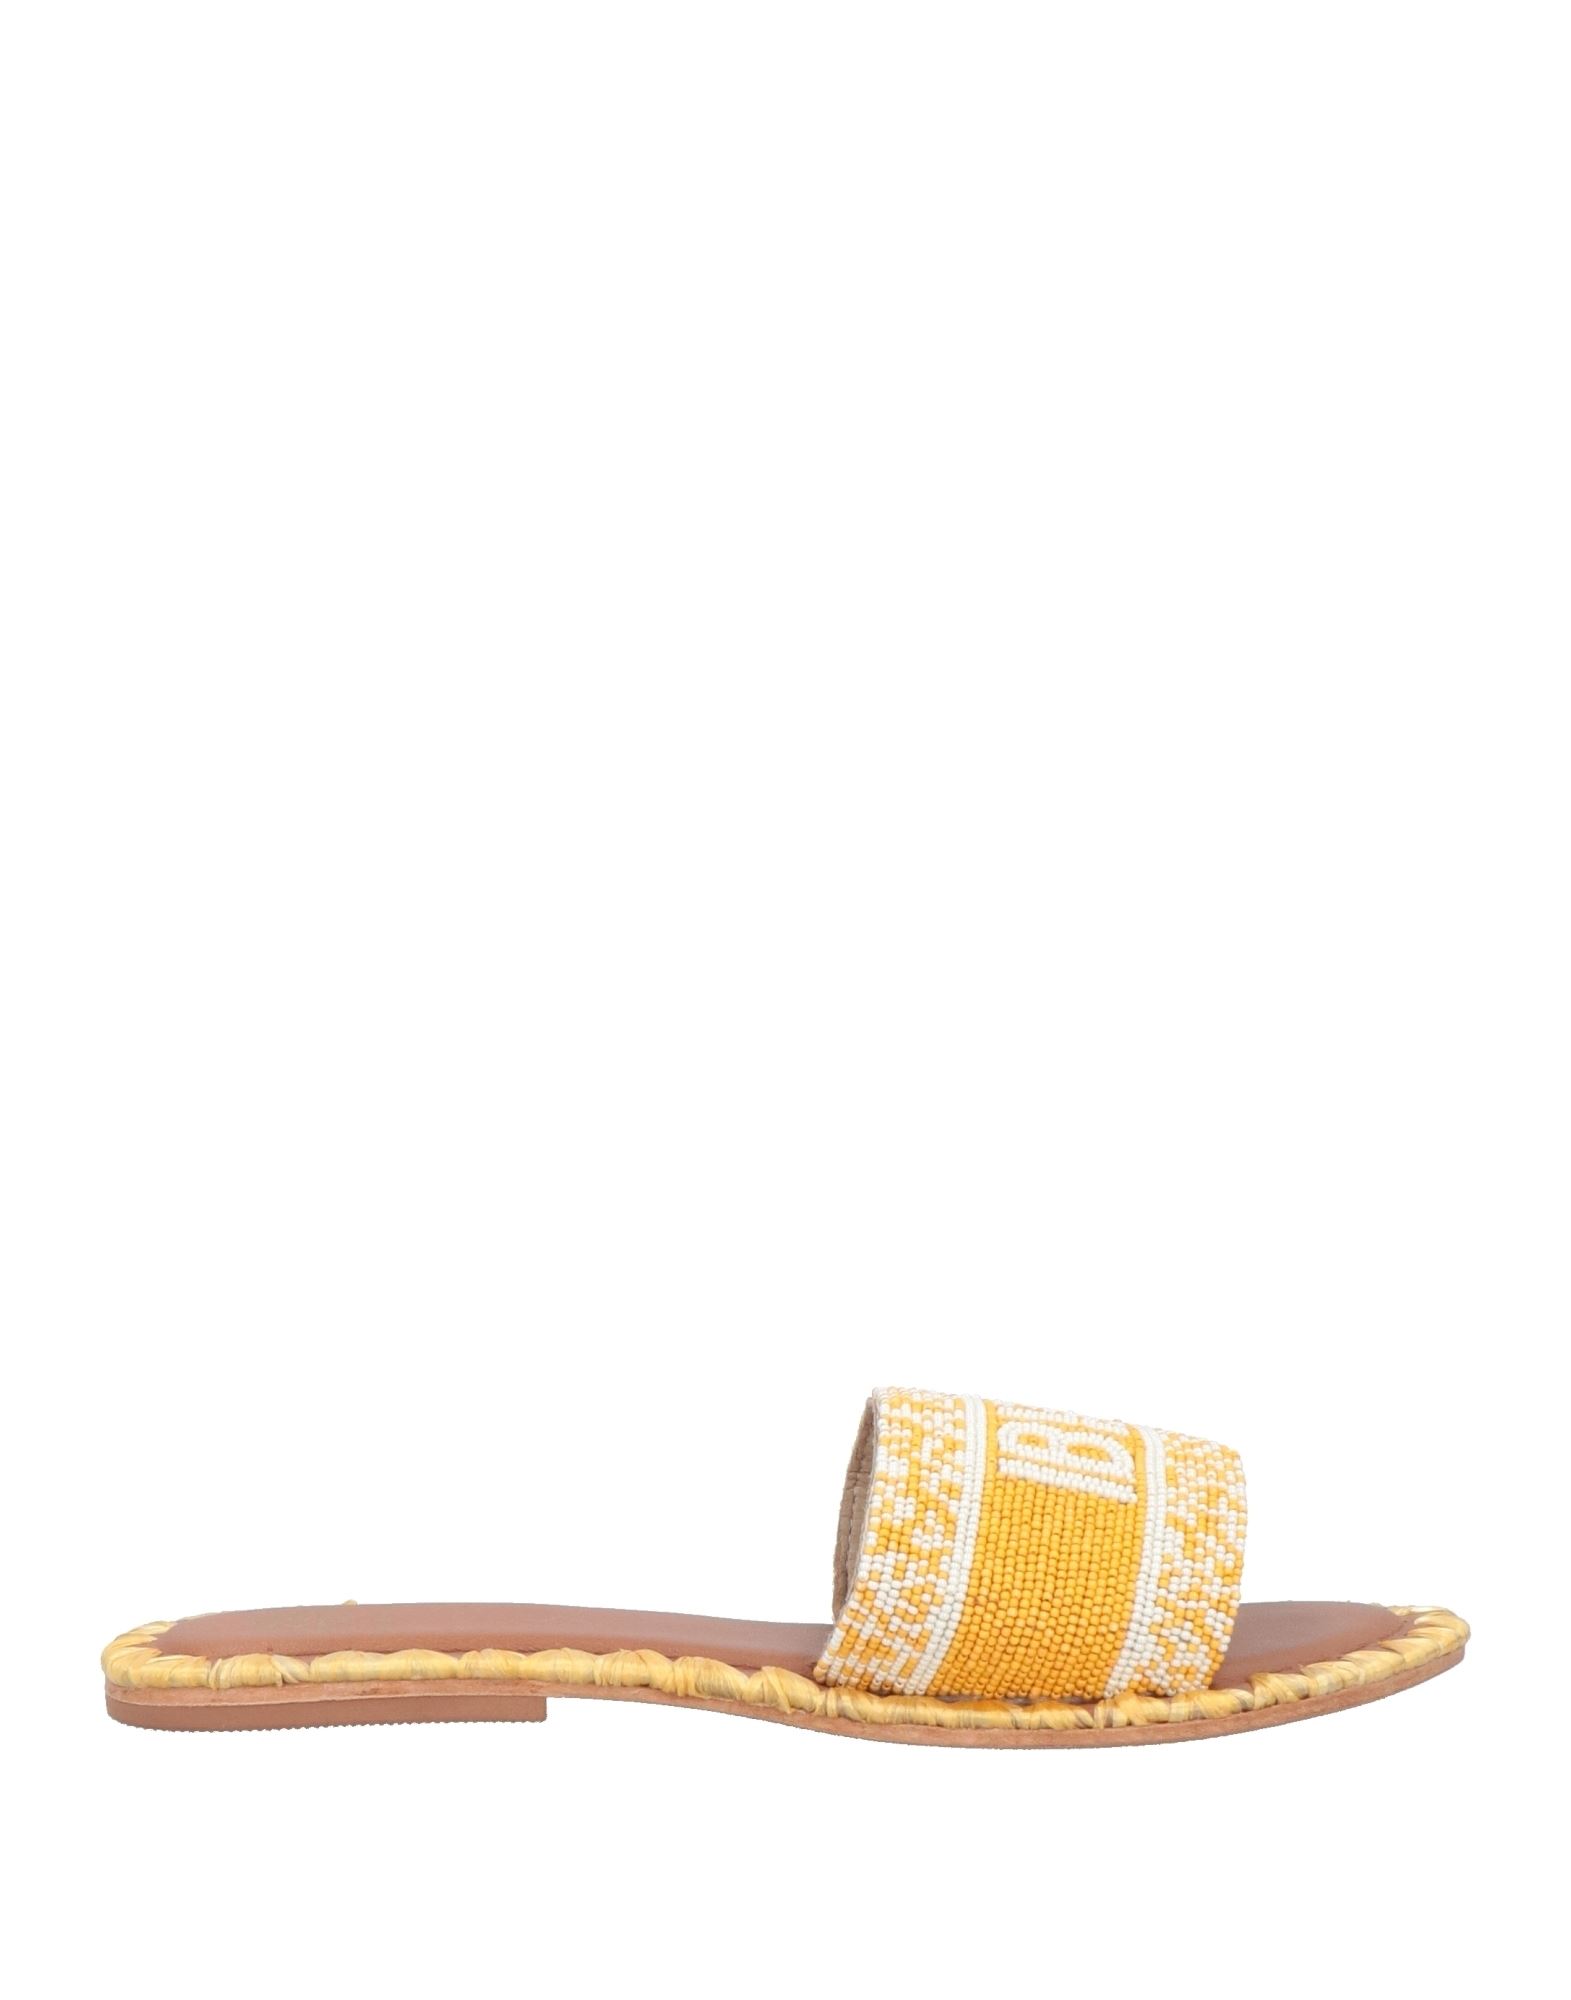 Shop De Siena Woman Sandals Yellow Size 8 Textile Fibers